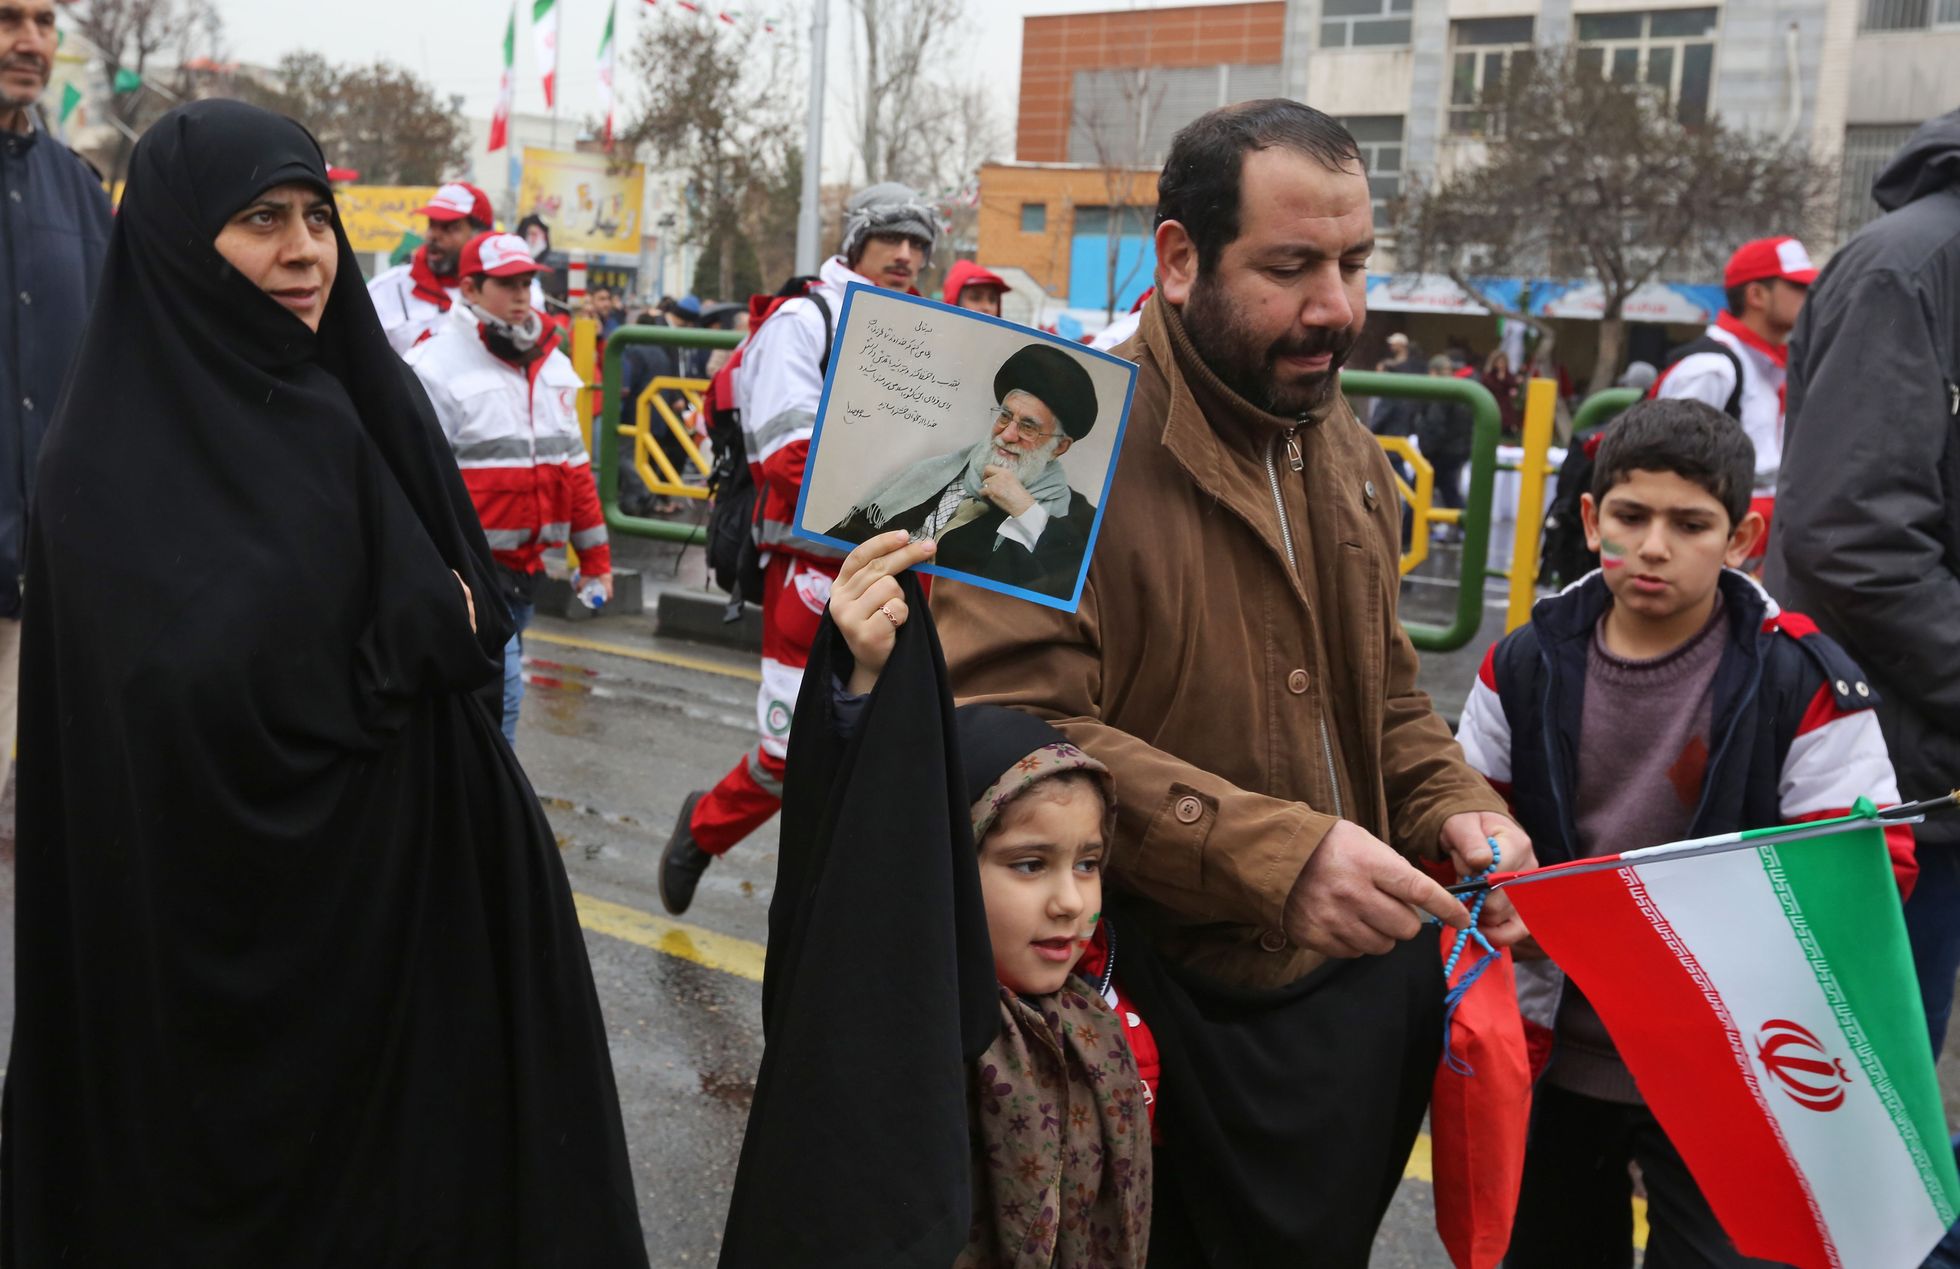 Iraanlased tähistamas Teheranis islamirevolutsiooni 40. aastapäeva. Tüdruku käes ajatolla Ali Khamenei portree.